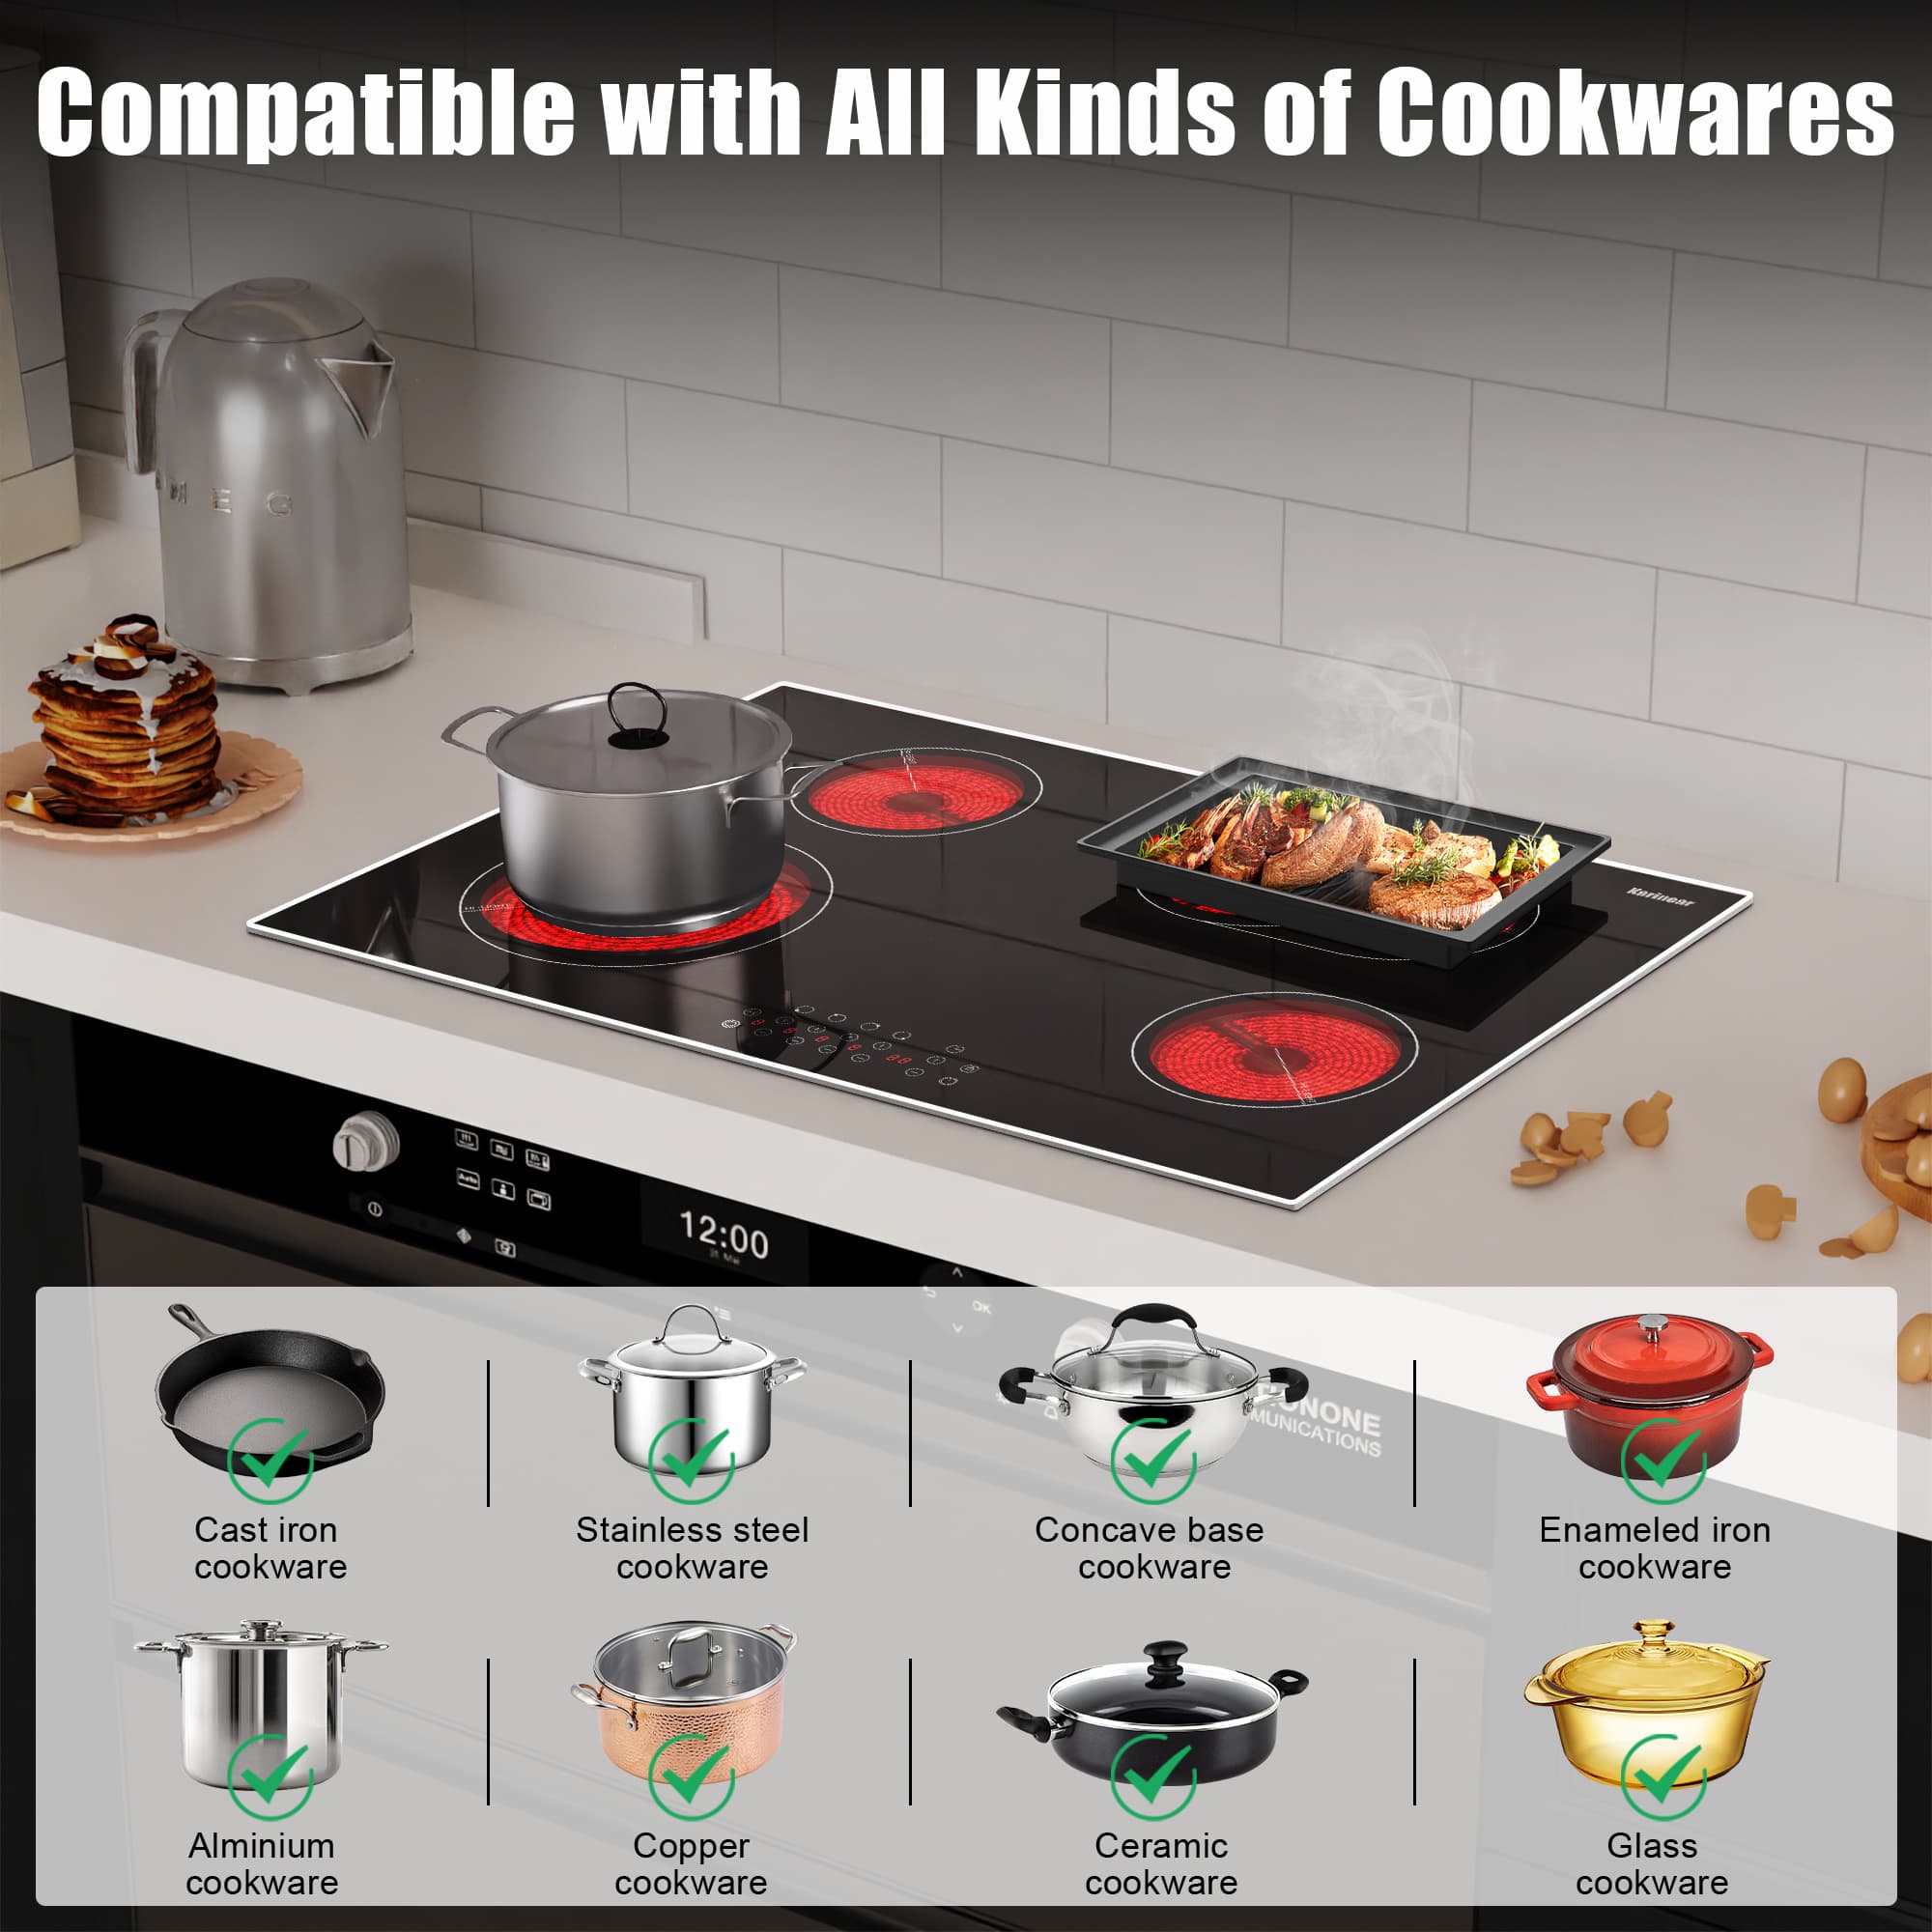 Cooktops & Cookware